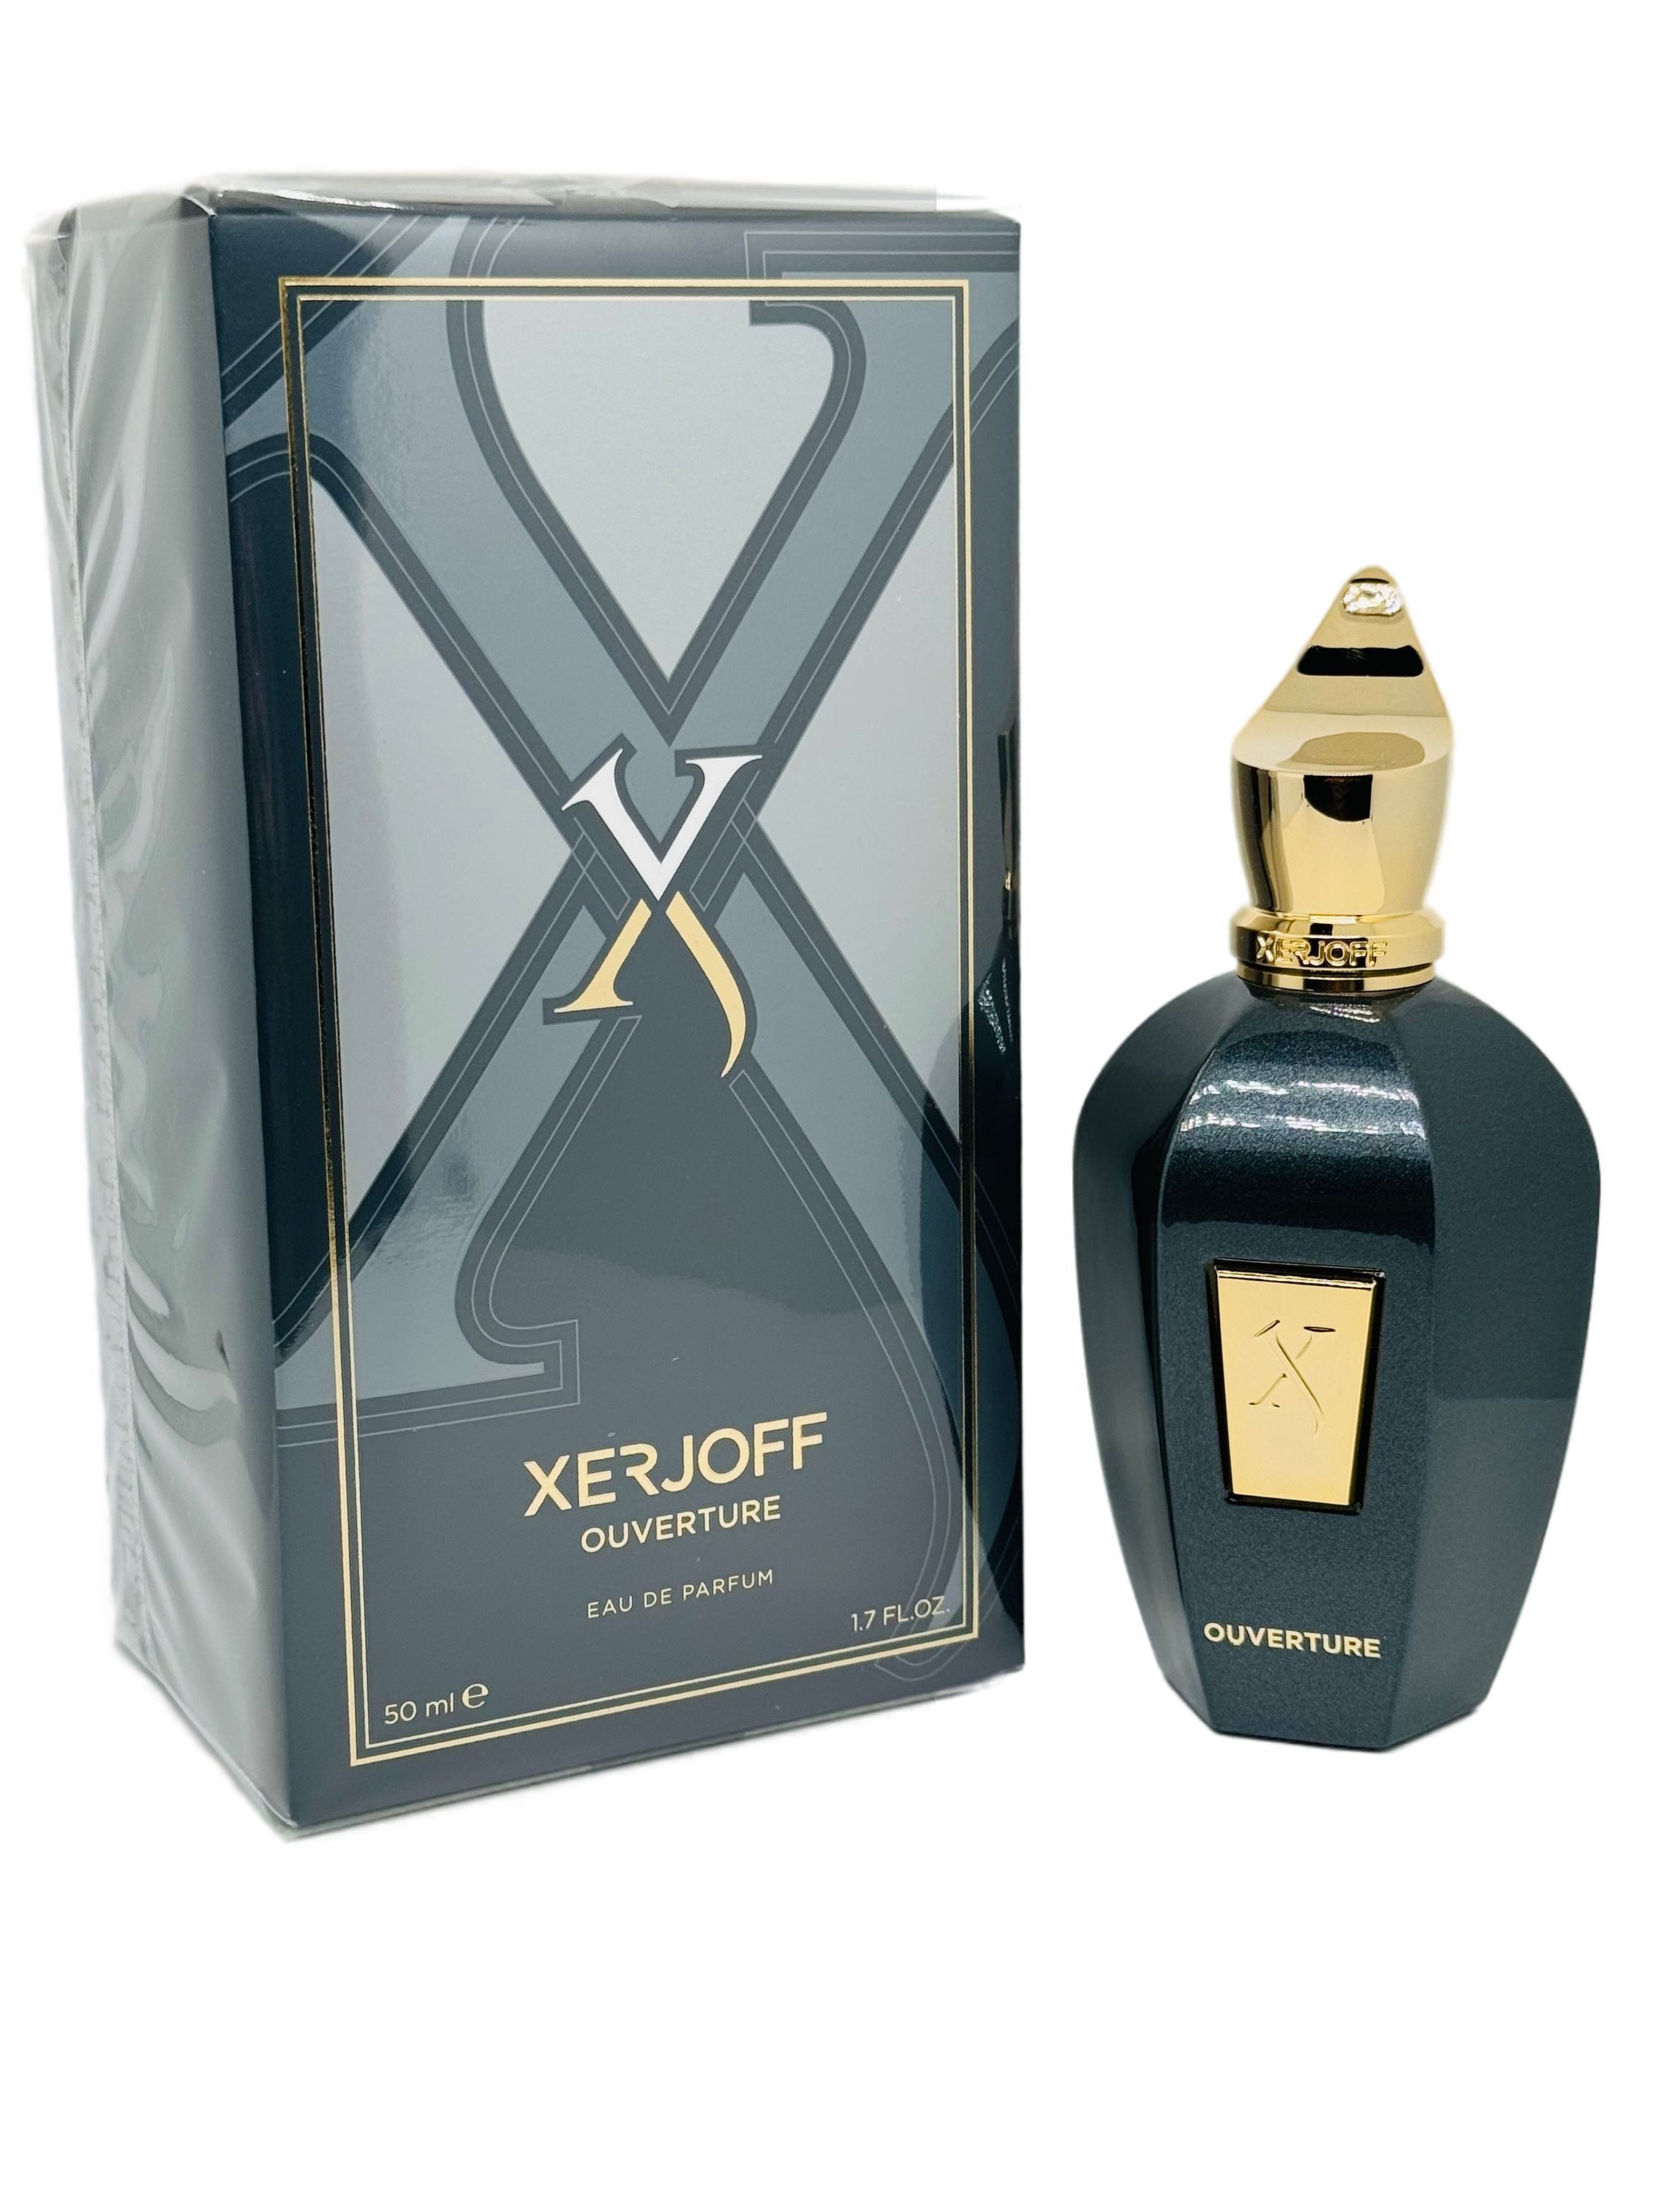 XERJOFF Eau de Parfum Ouverture 50ml